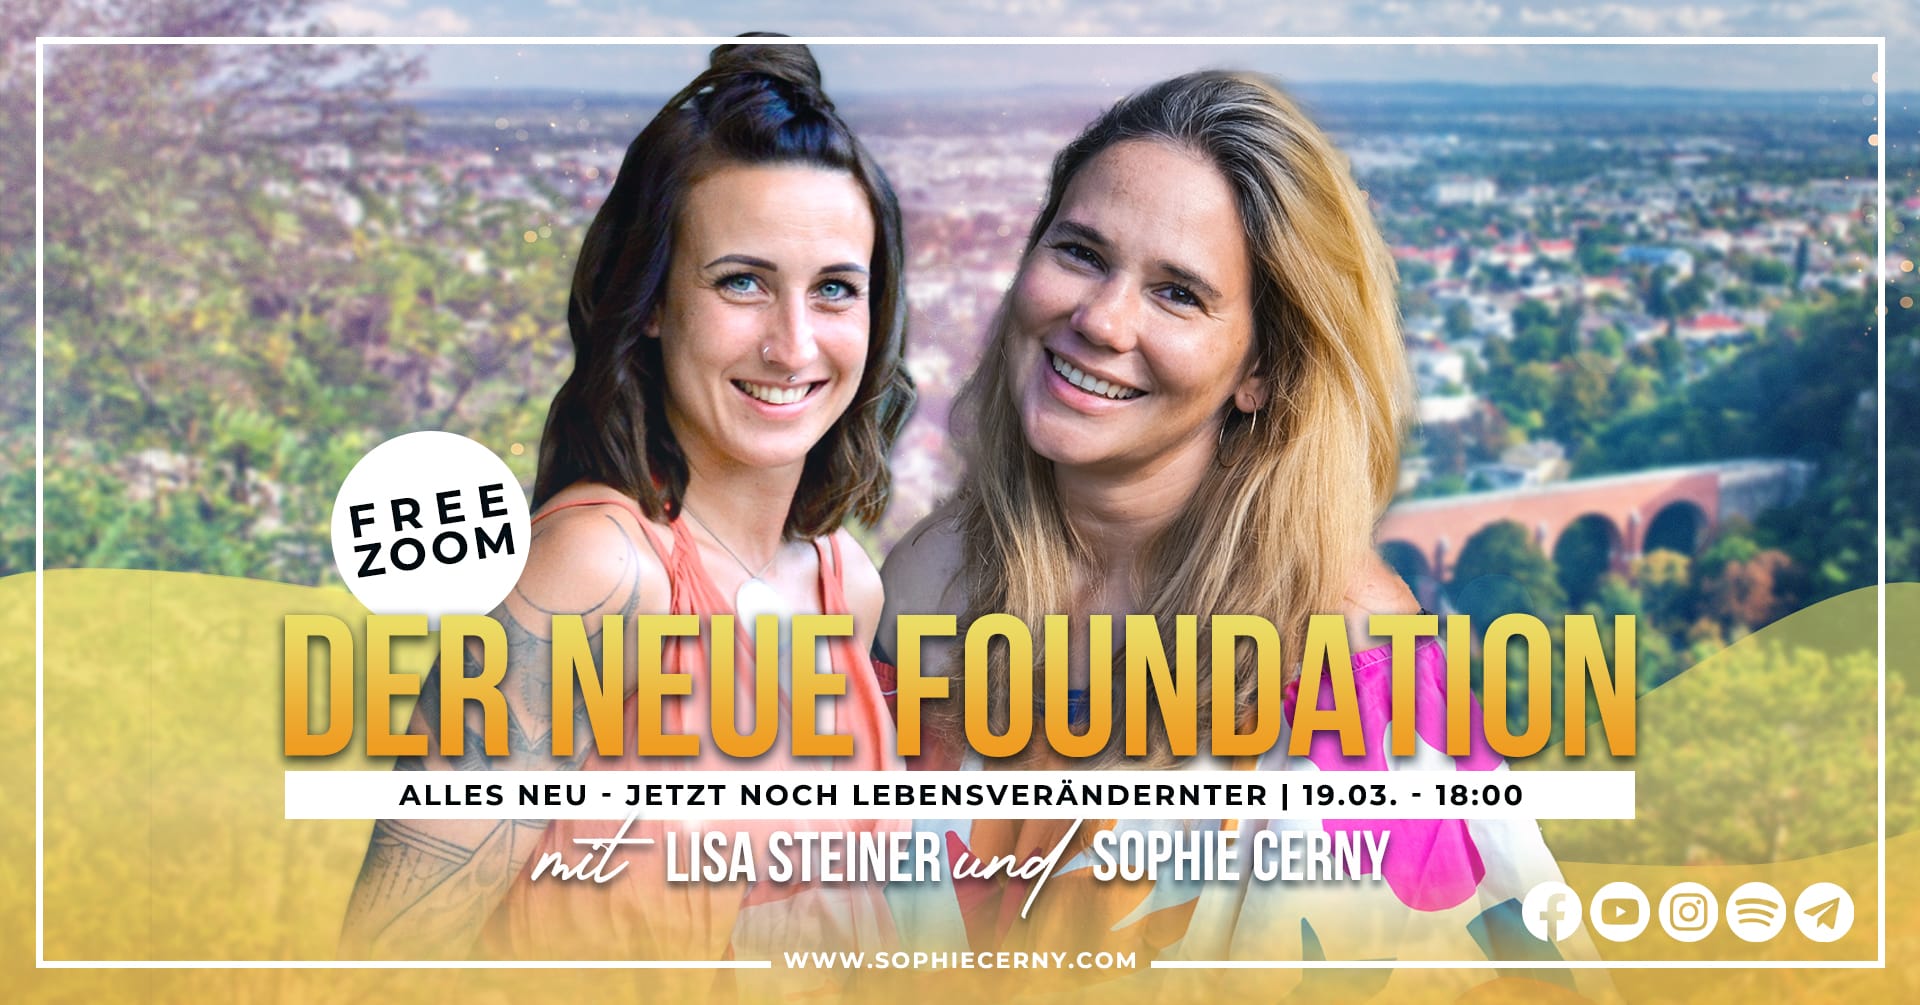 Der neue Foundation mit Lisa Steiner und Sophie Cerny